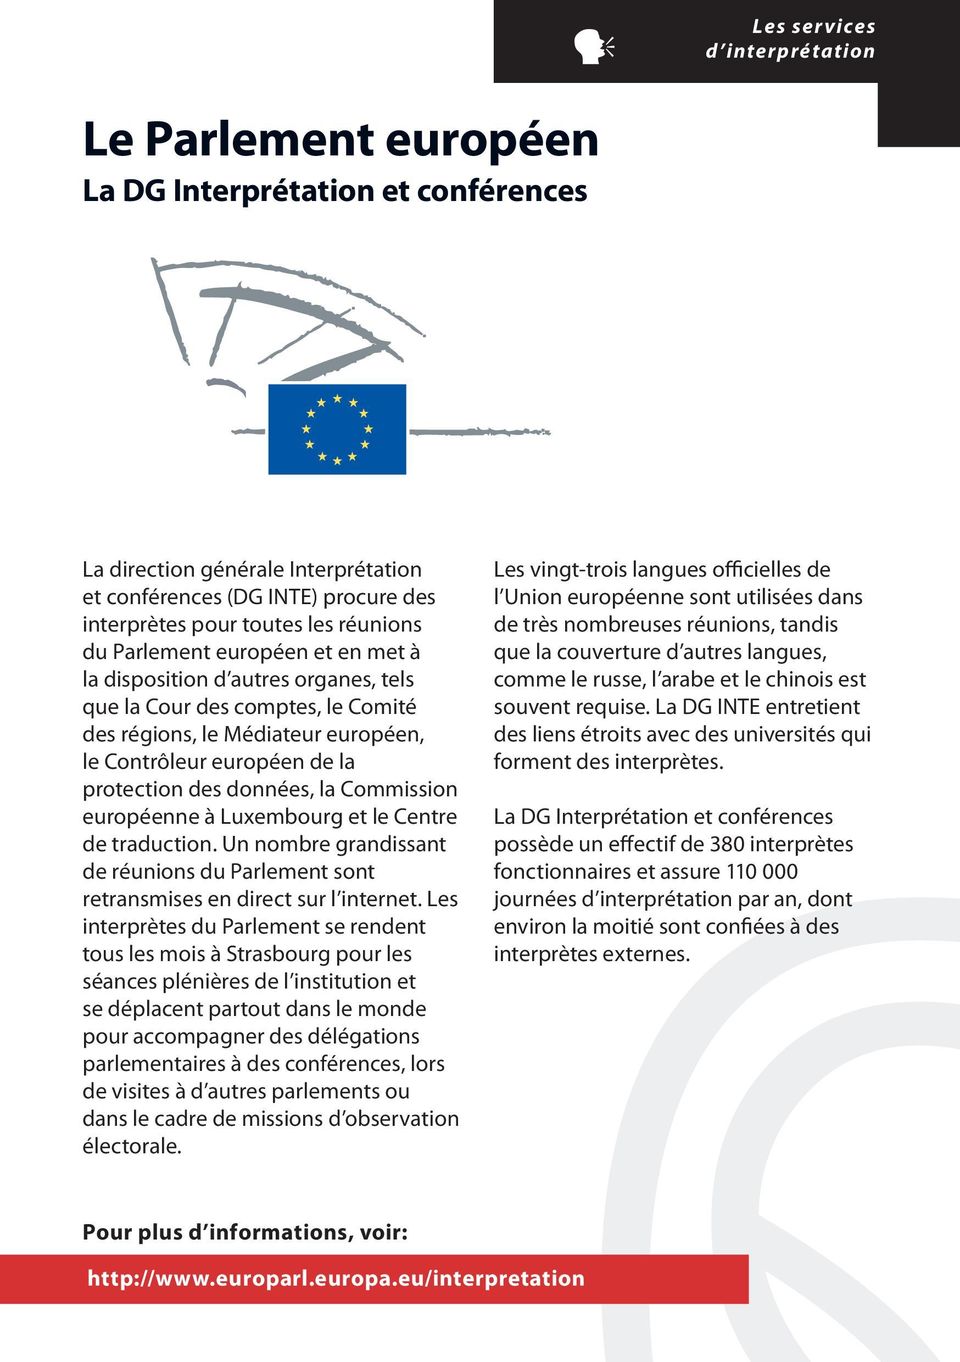 européen de la protection des données, la Commission européenne à Luxembourg et le Centre de traduction. Un nombre grandissant de réunions du Parlement sont retransmises en direct sur l internet.